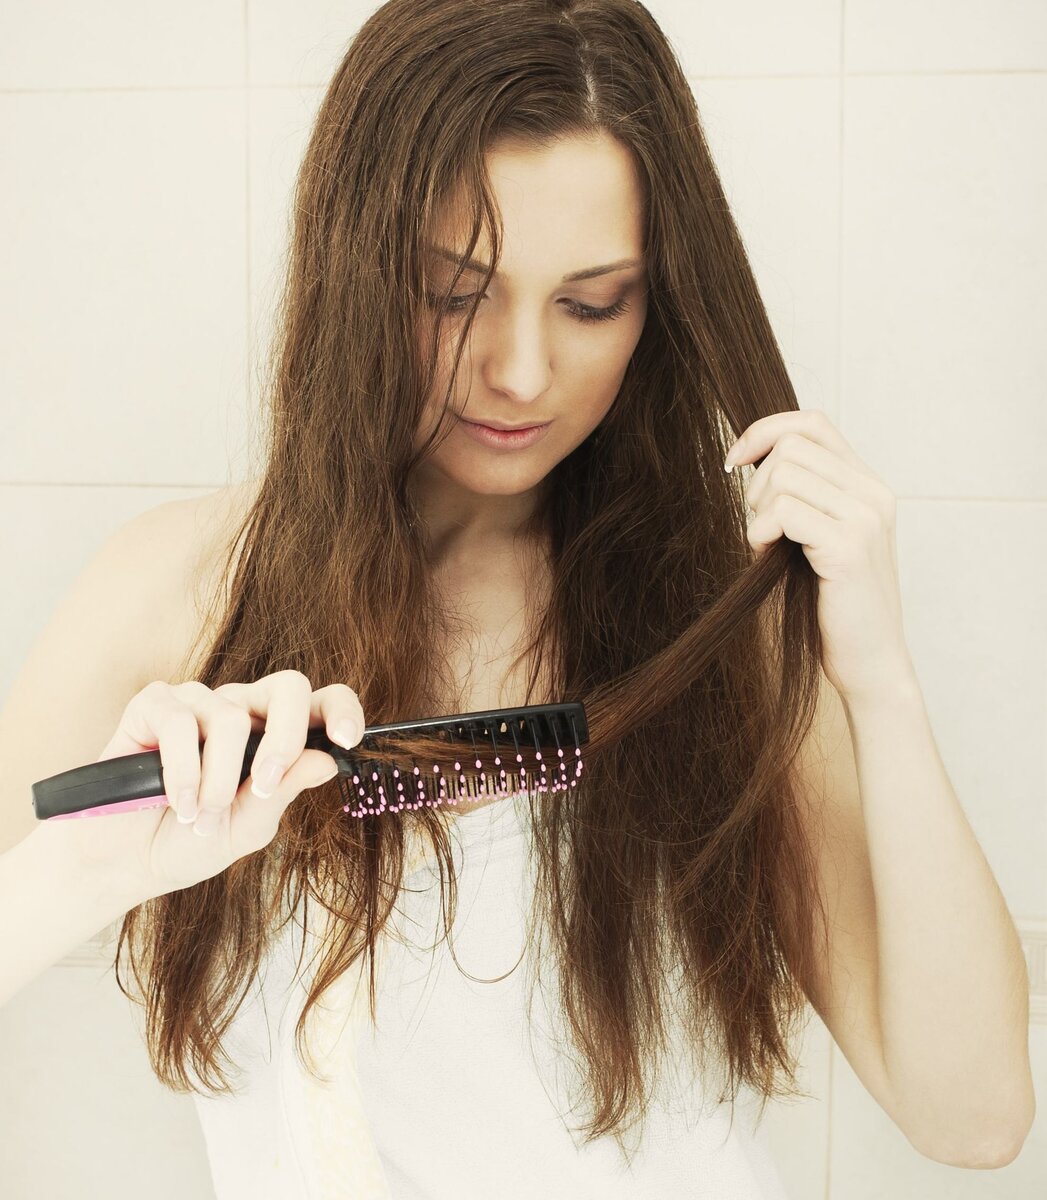 Добрый день, уважаемые читатели! С проблемой выпадения волос сталкивается каждая женщина. Стоит понимать, что терять до 150 волос - абсолютная норма, против которой не нужно принимать никакие меры.